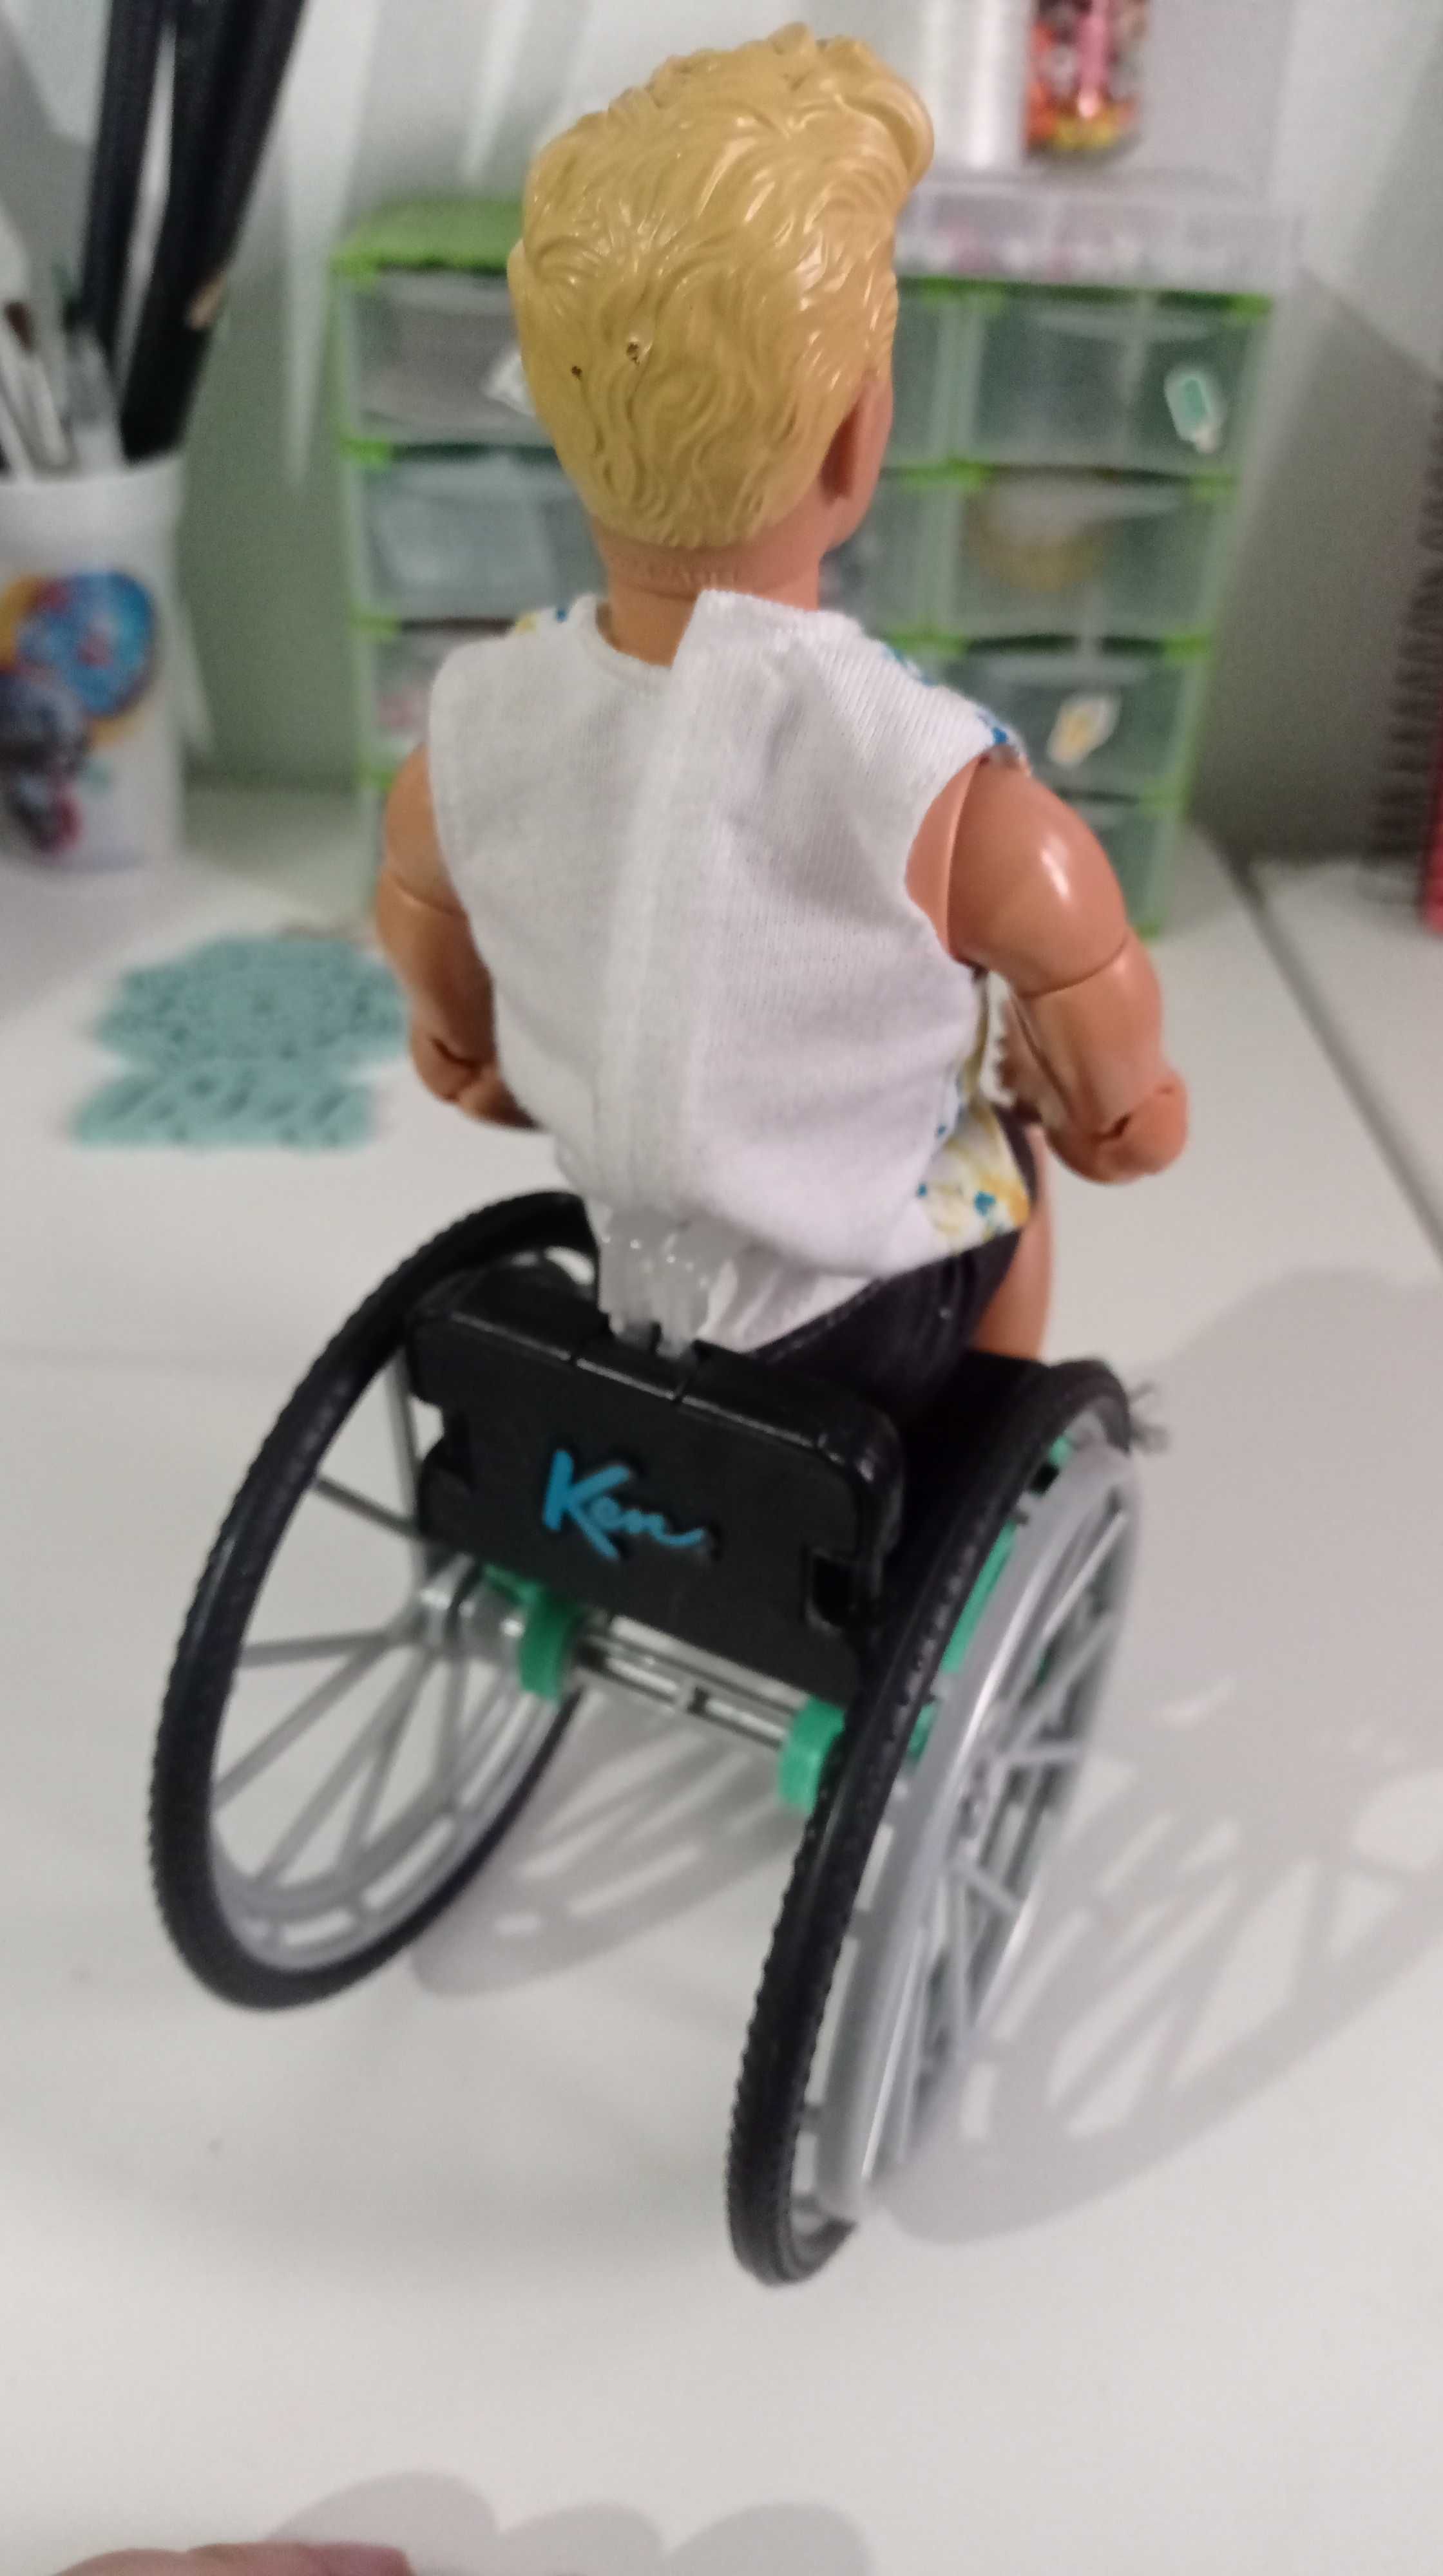 Ken com cadeira de rodas